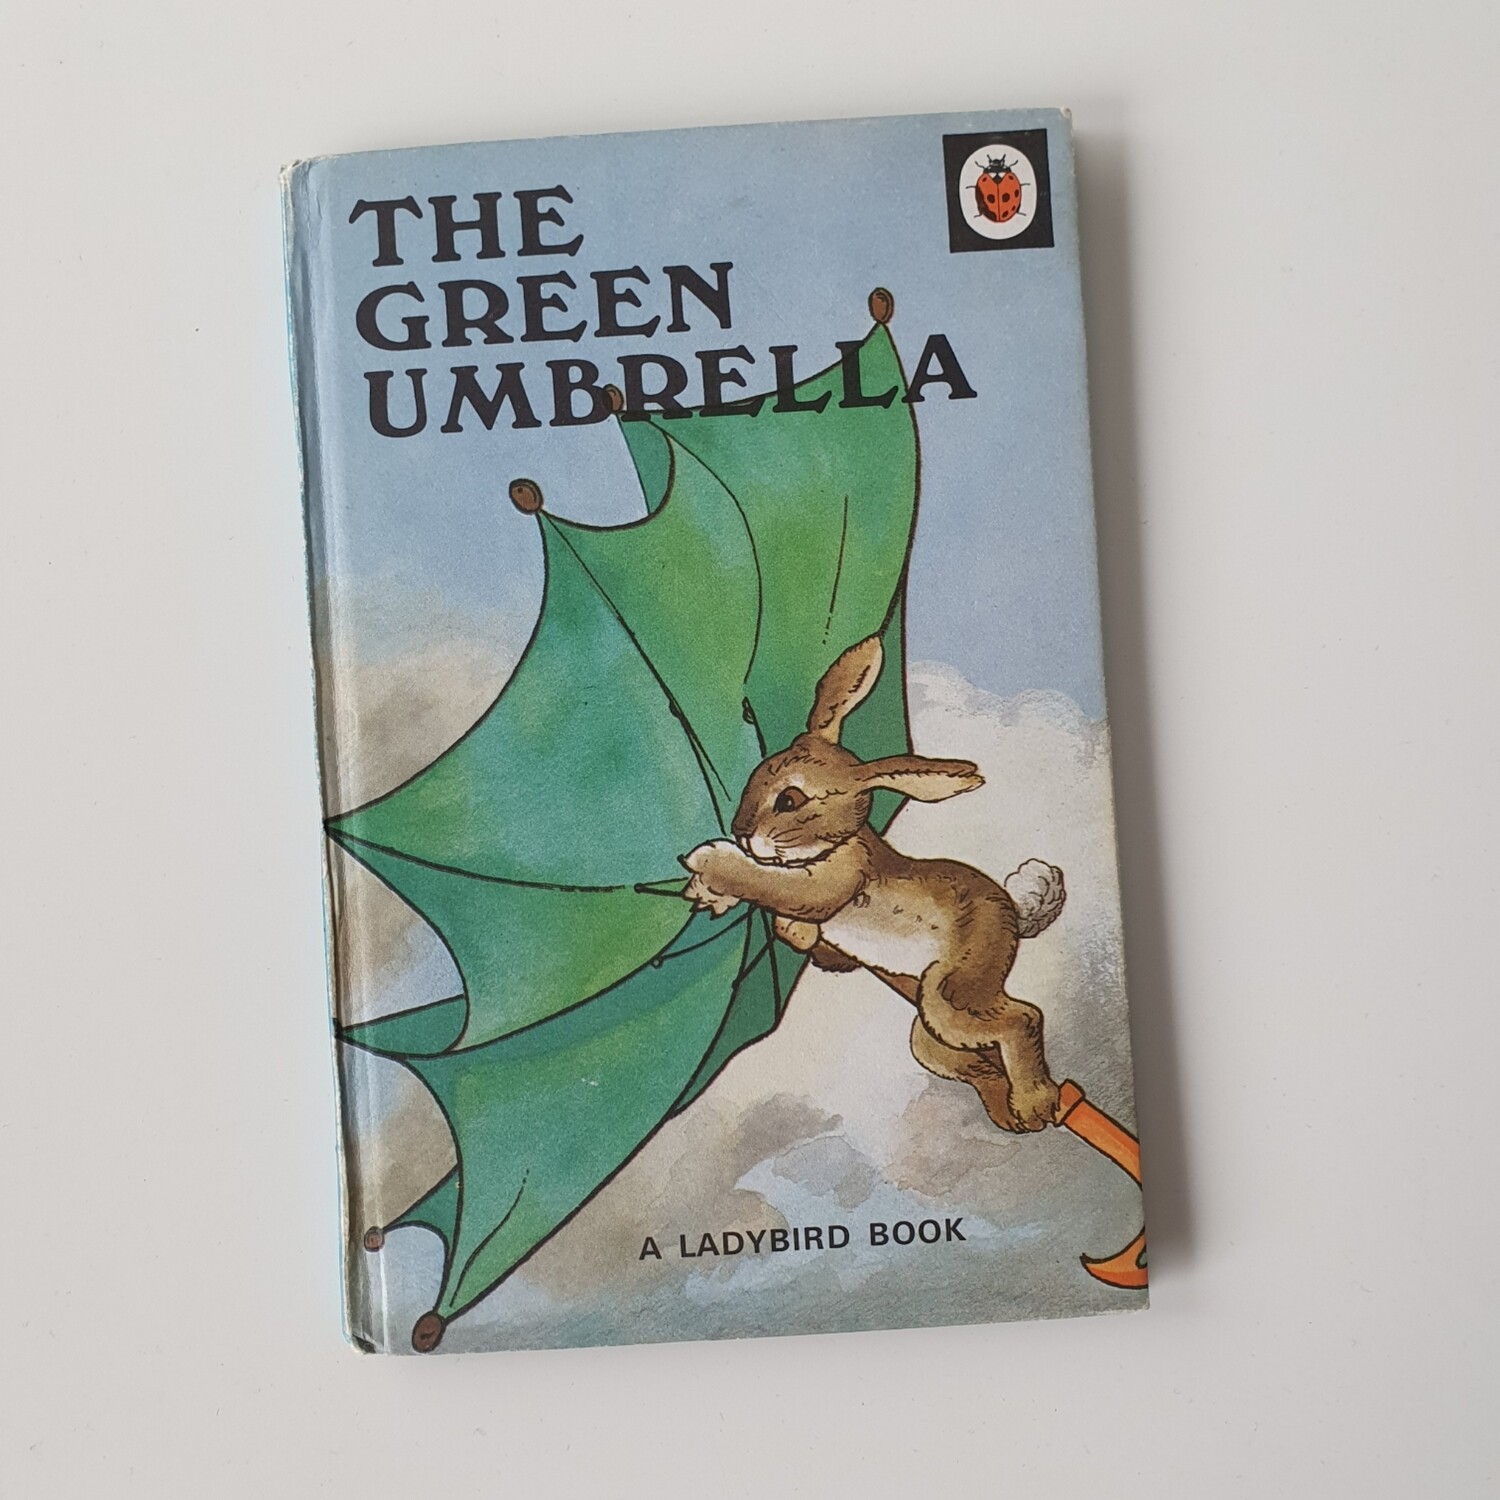 The Green Umbrella Notebook - Ladybird book - rabbit